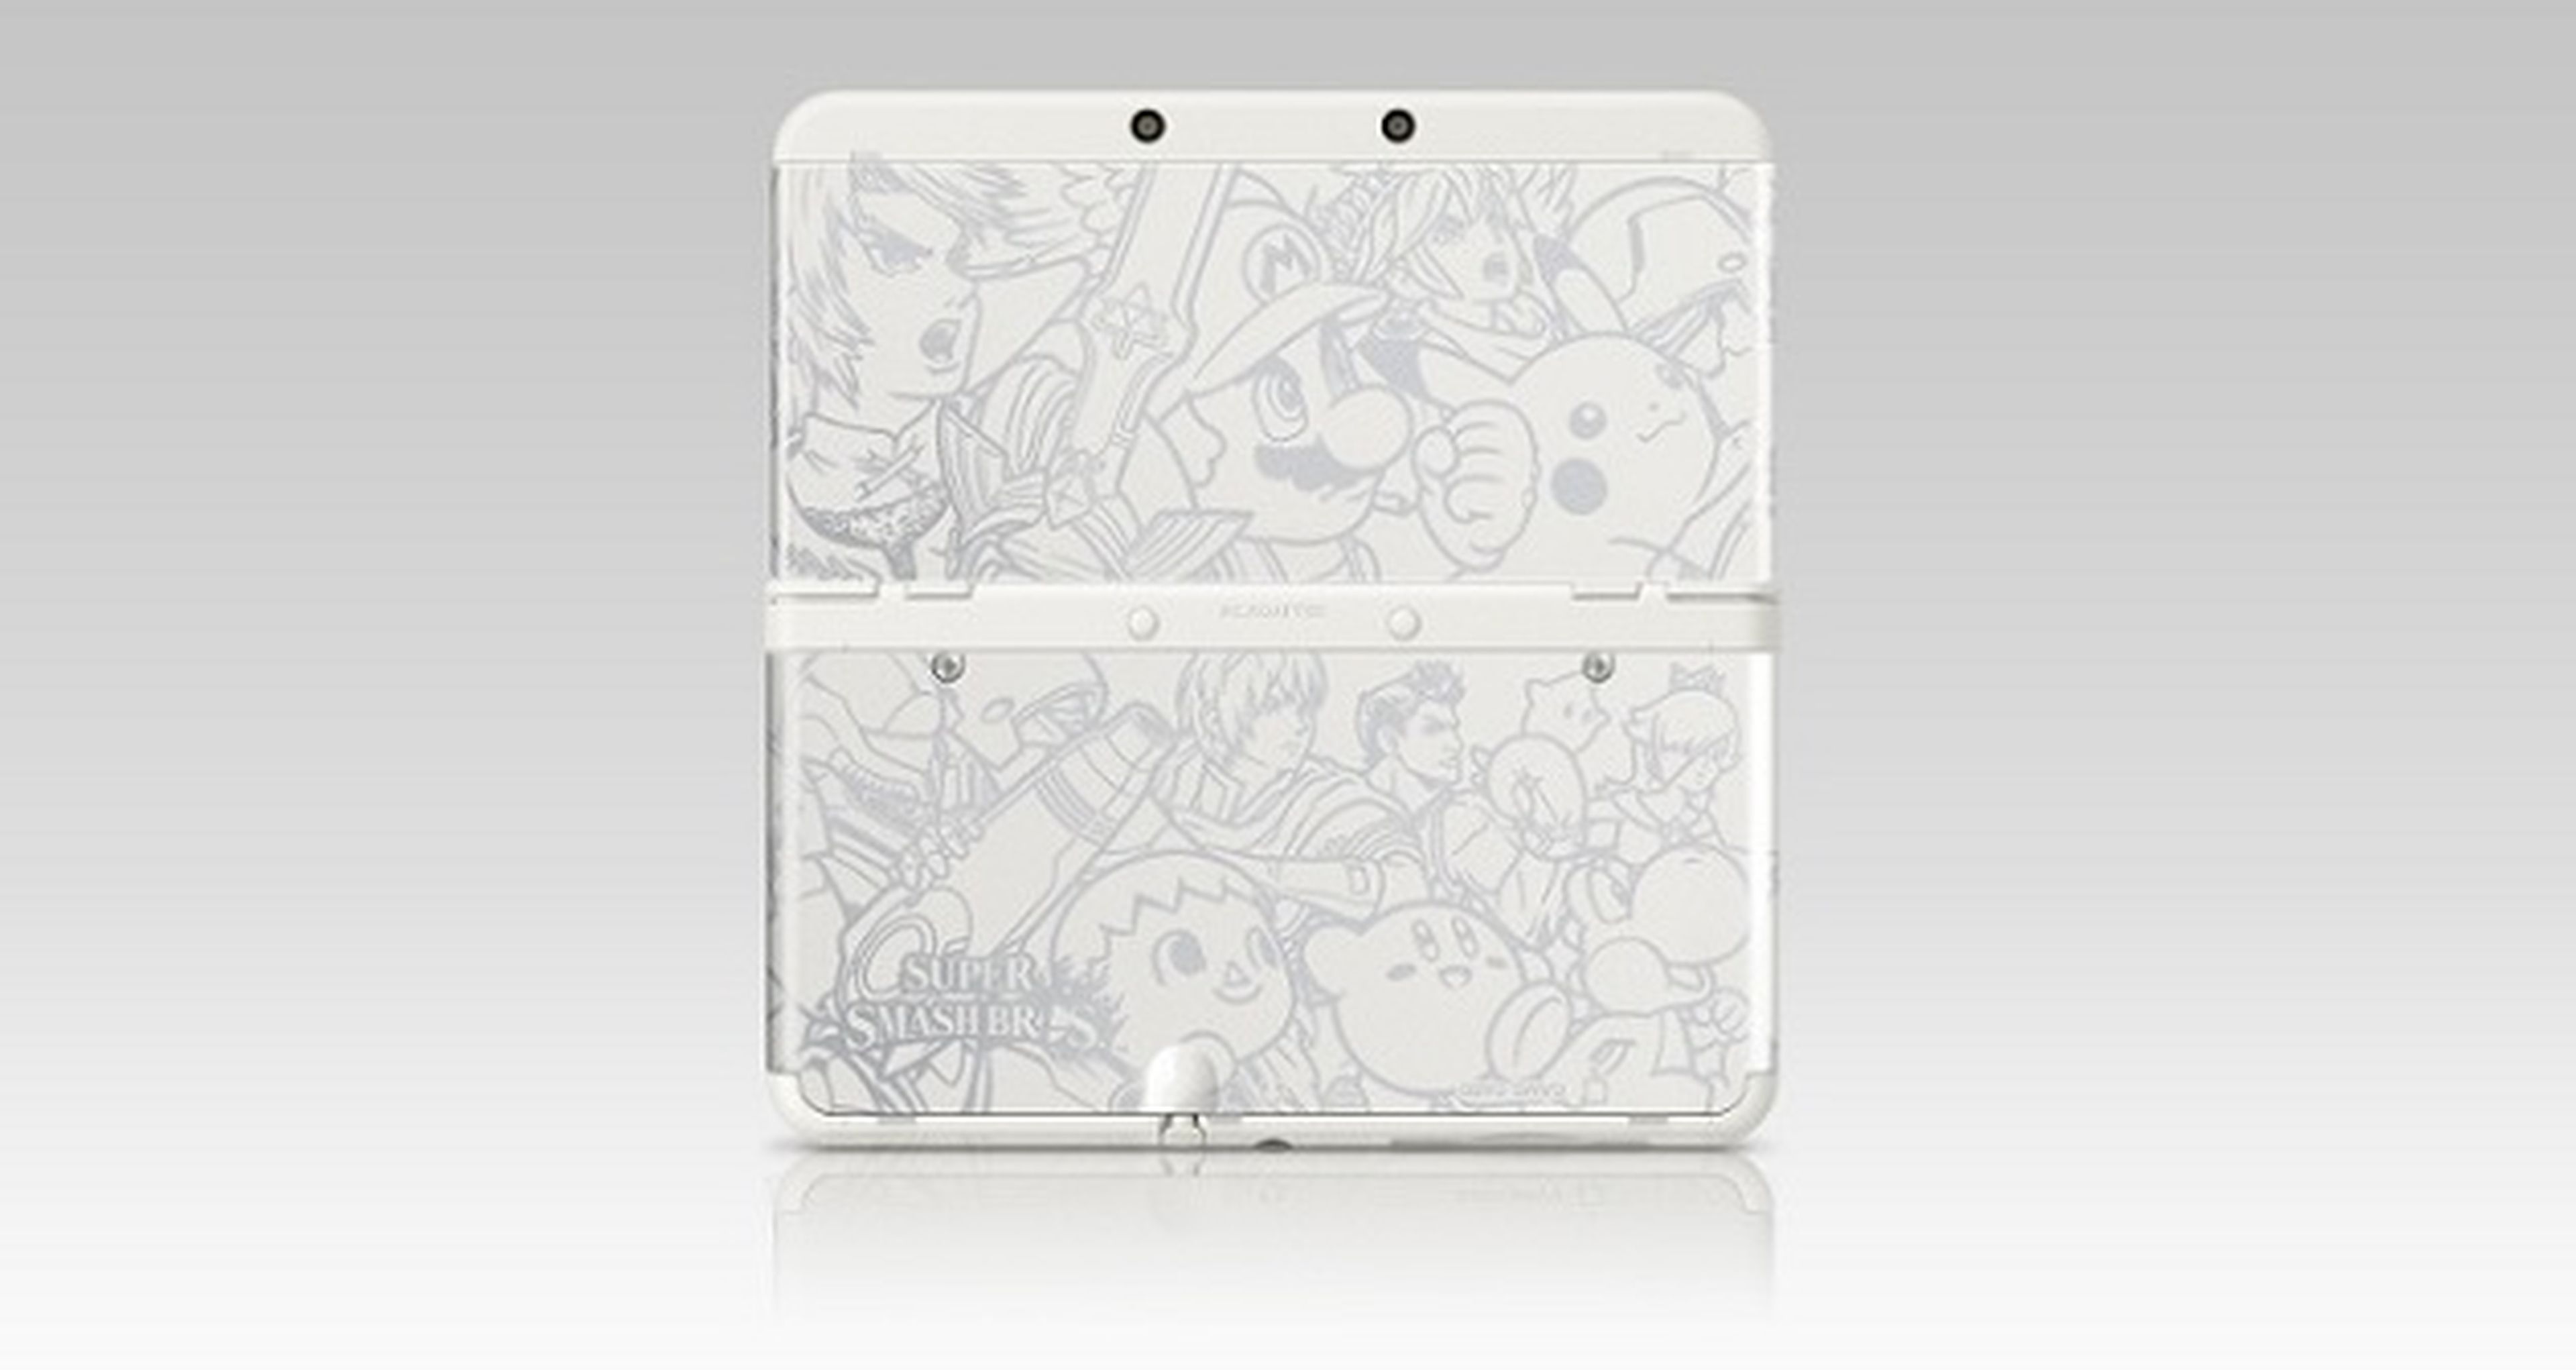 New Nintendo 3DS Ambassador Edition, primero en el Club Nintendo